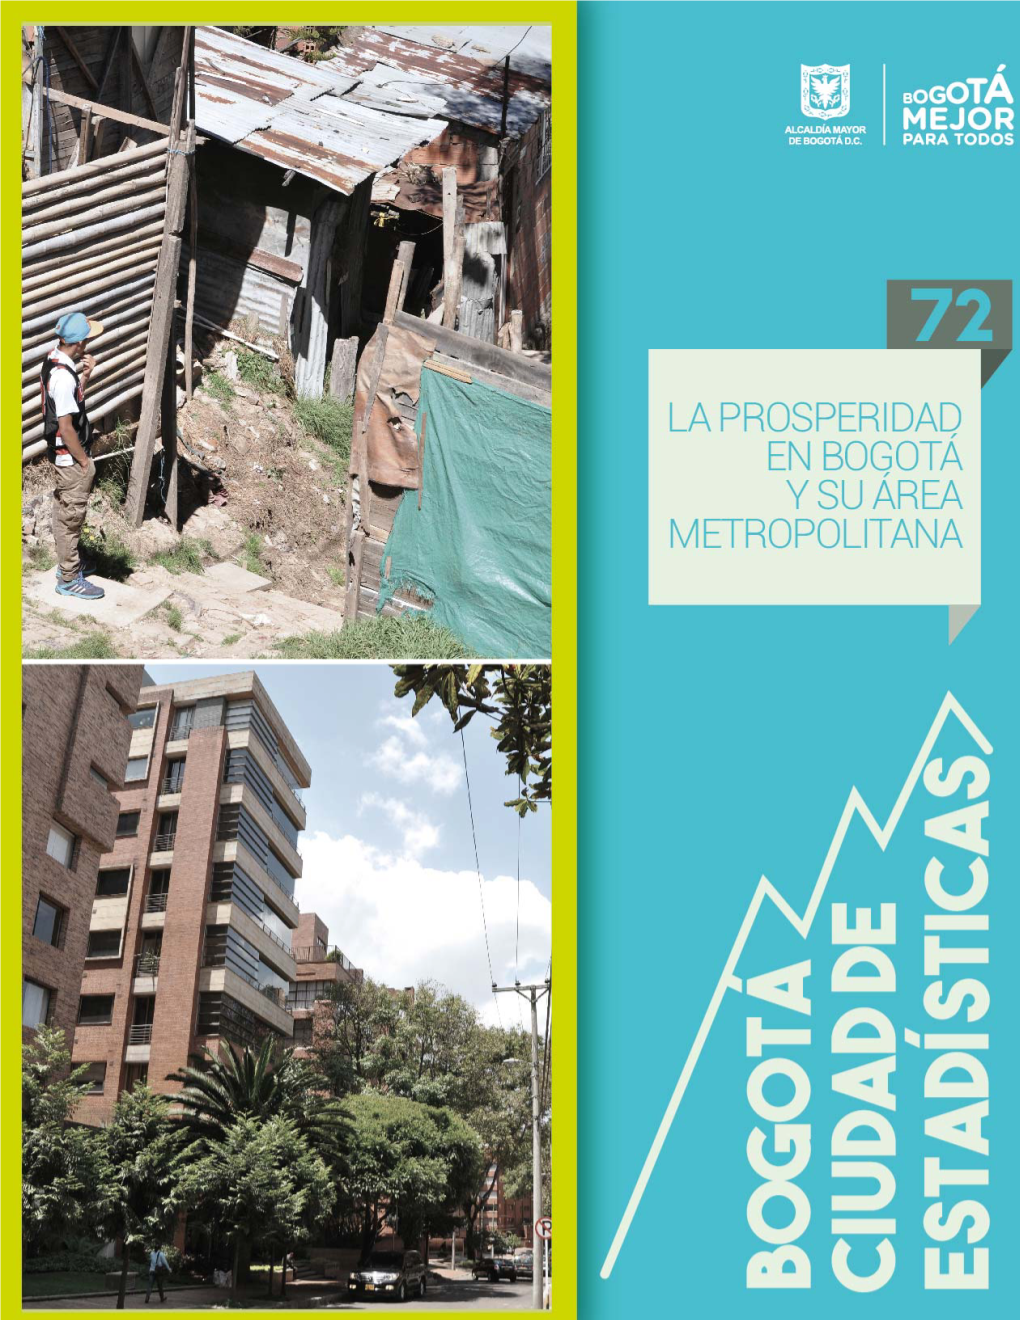 Índice De Prosperidad De Bogotá Y Área Metropolitana